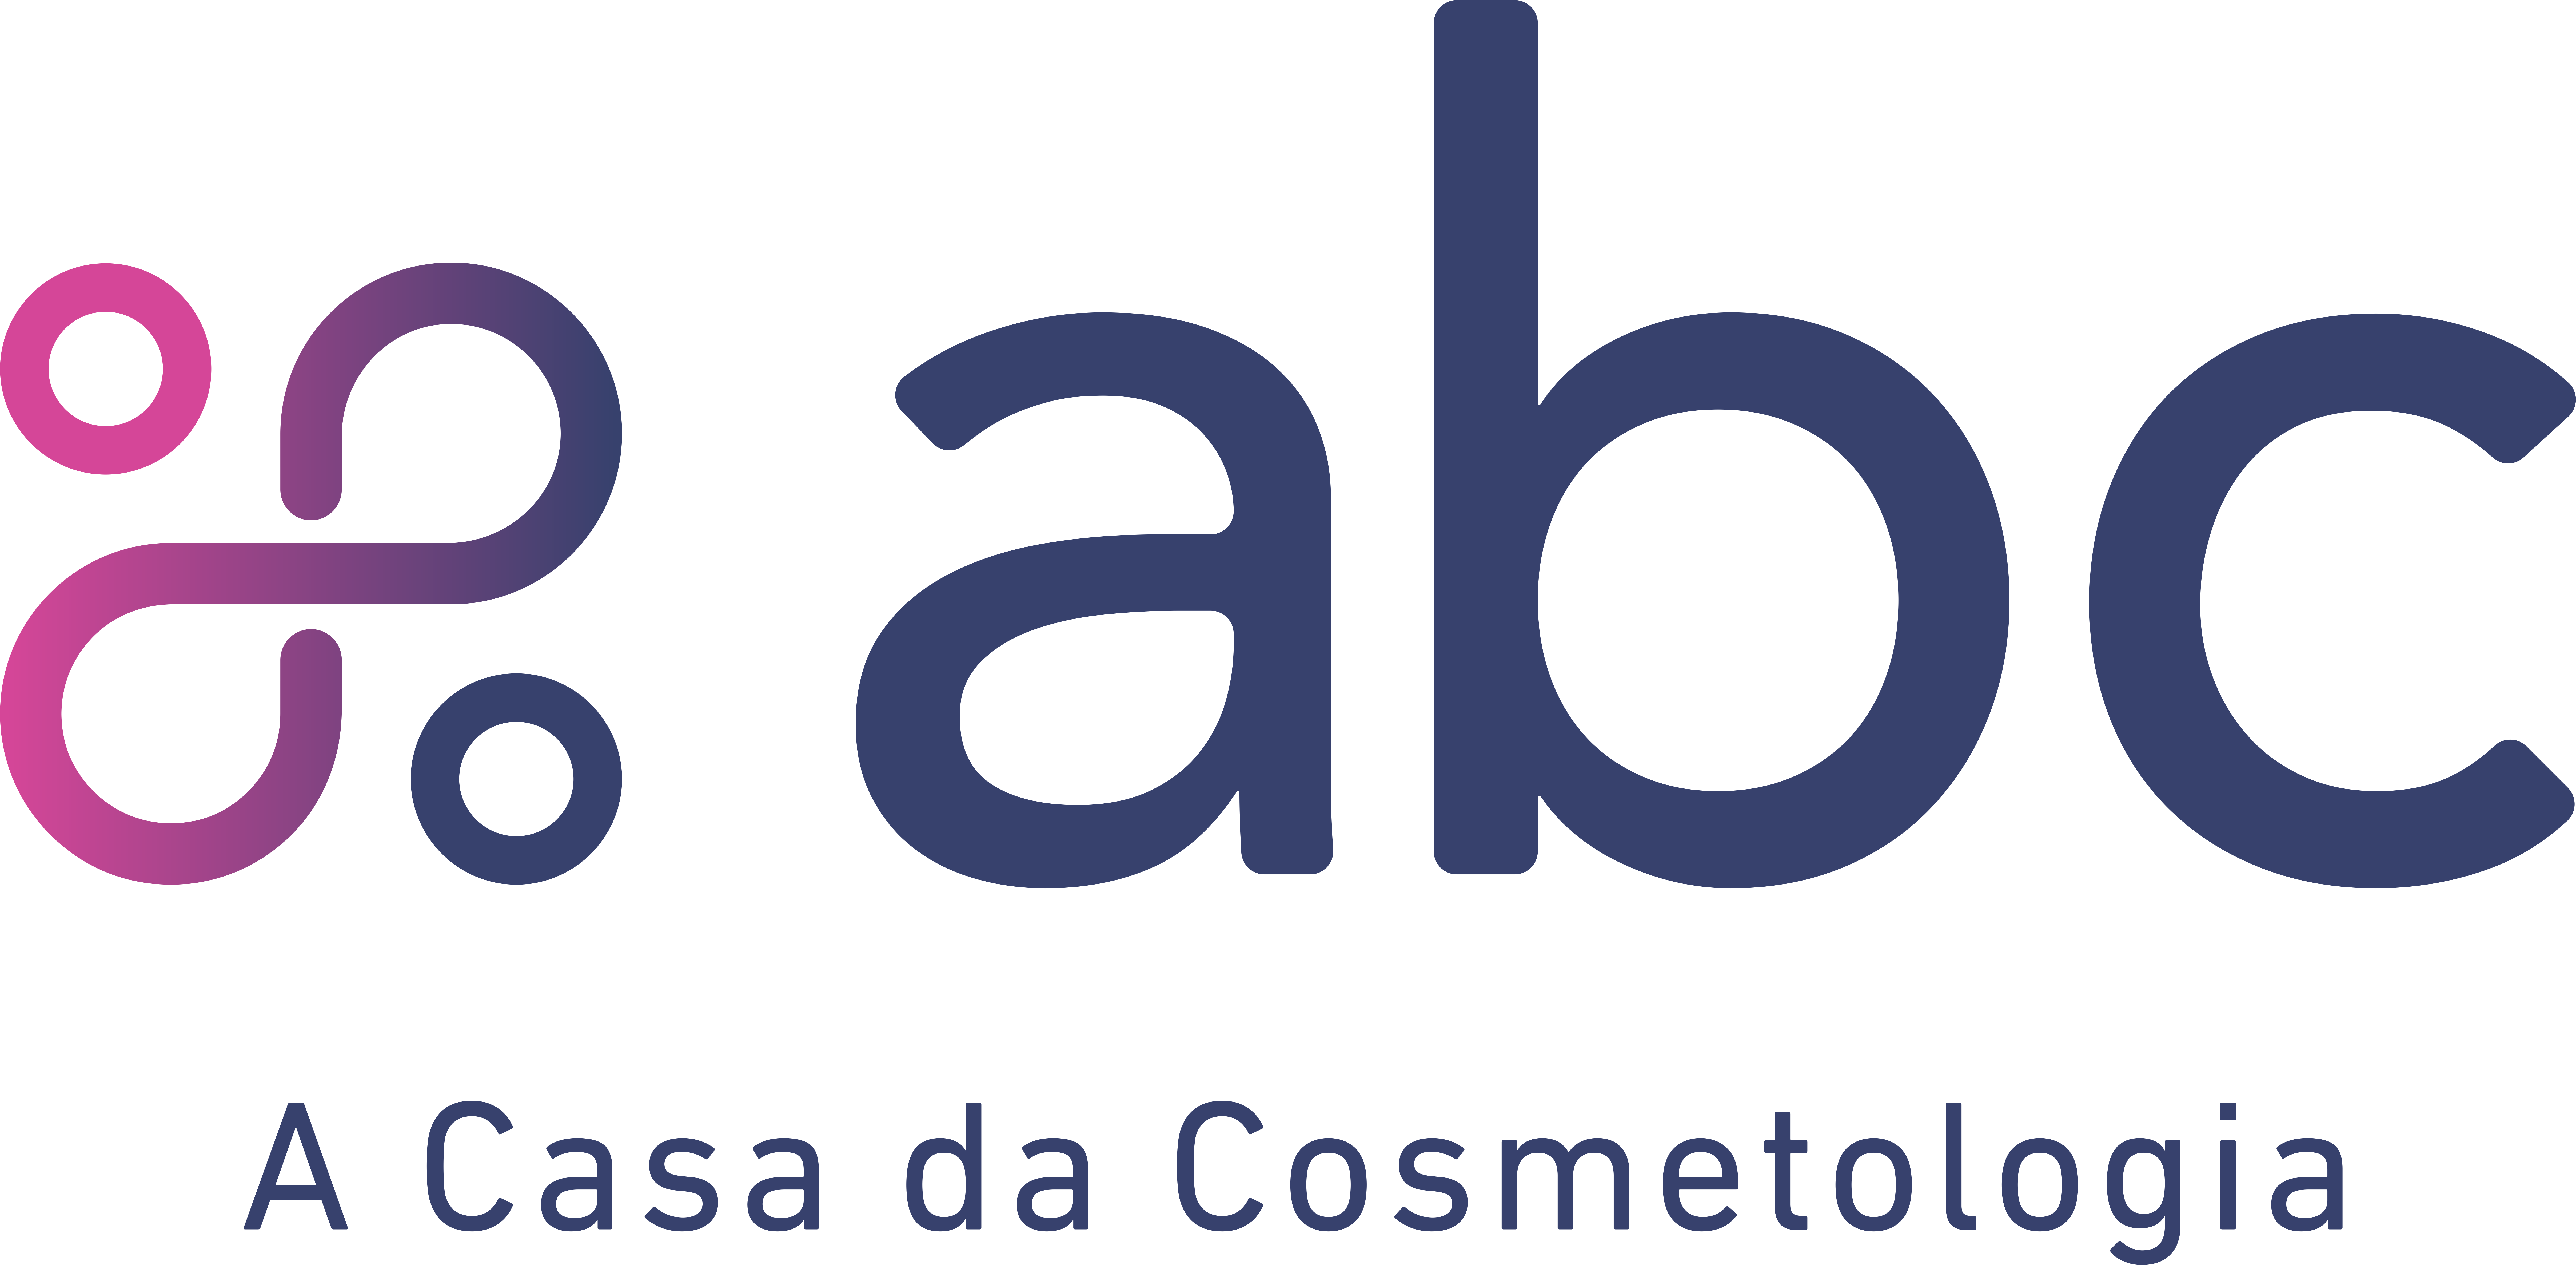 ABC - Associação Brasileira de Cosmetologia